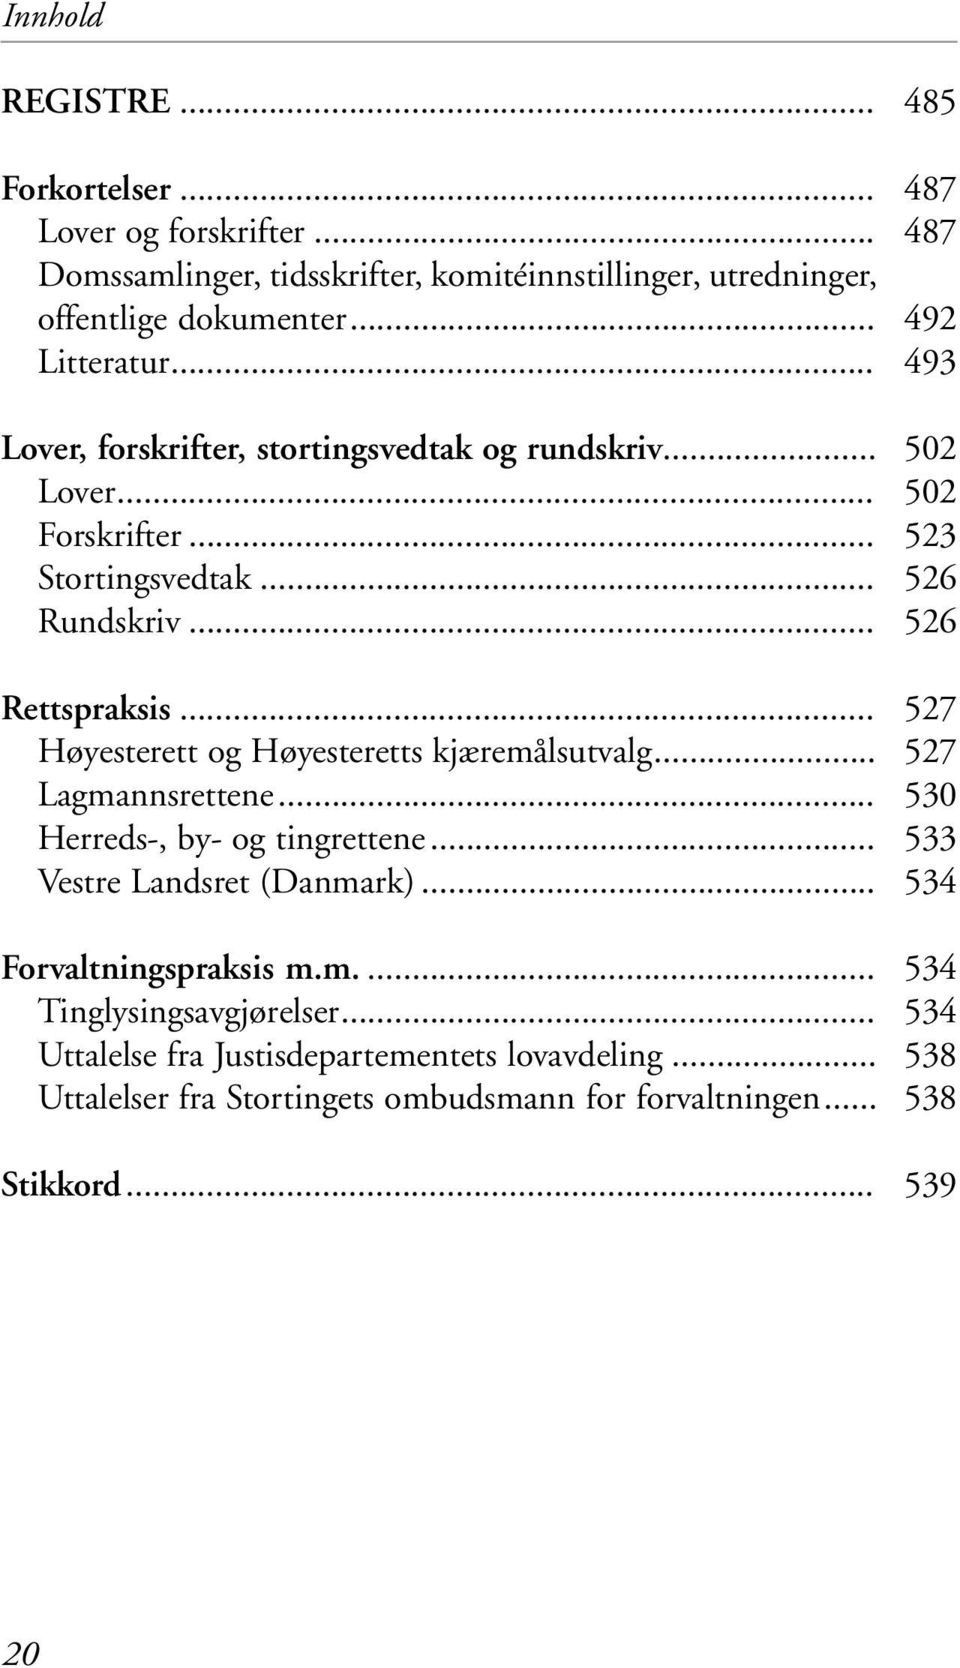 .. Høyesterett og Høyesteretts kjæremålsutvalg... Lagmannsrettene... Herreds-, by- og tingrettene... Vestre Landsret (Danmark)... Forvaltningspraksis m.m.... Tinglysingsavgjørelser.